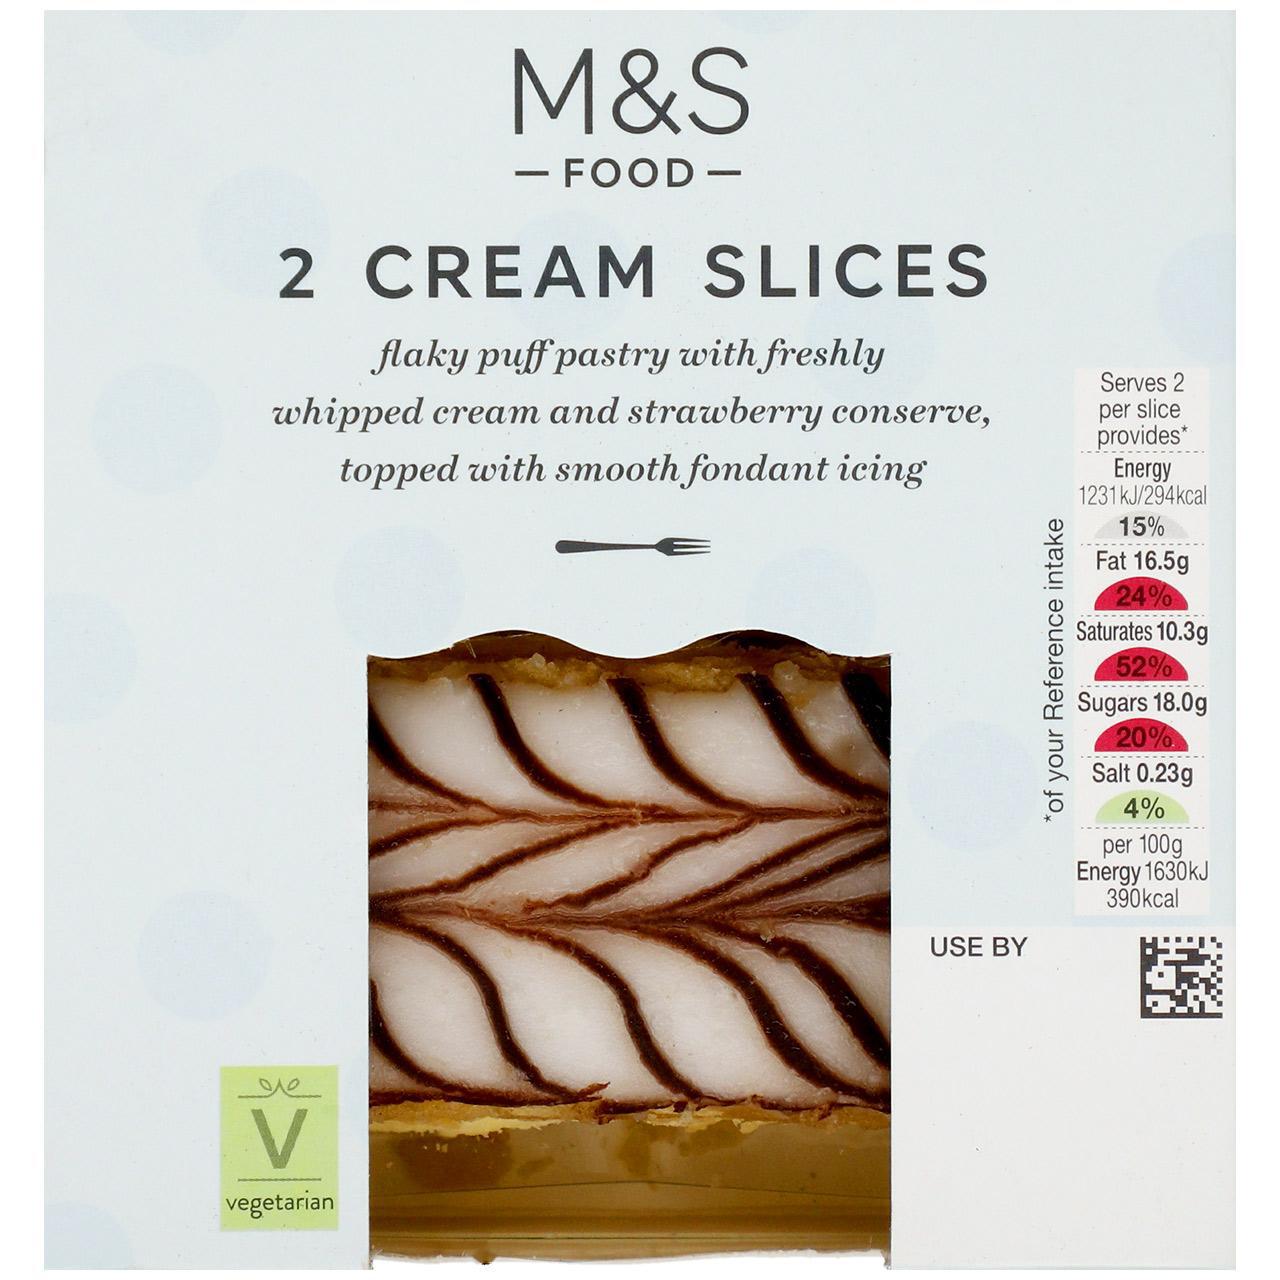 M&S Cream Slices 2 per pack